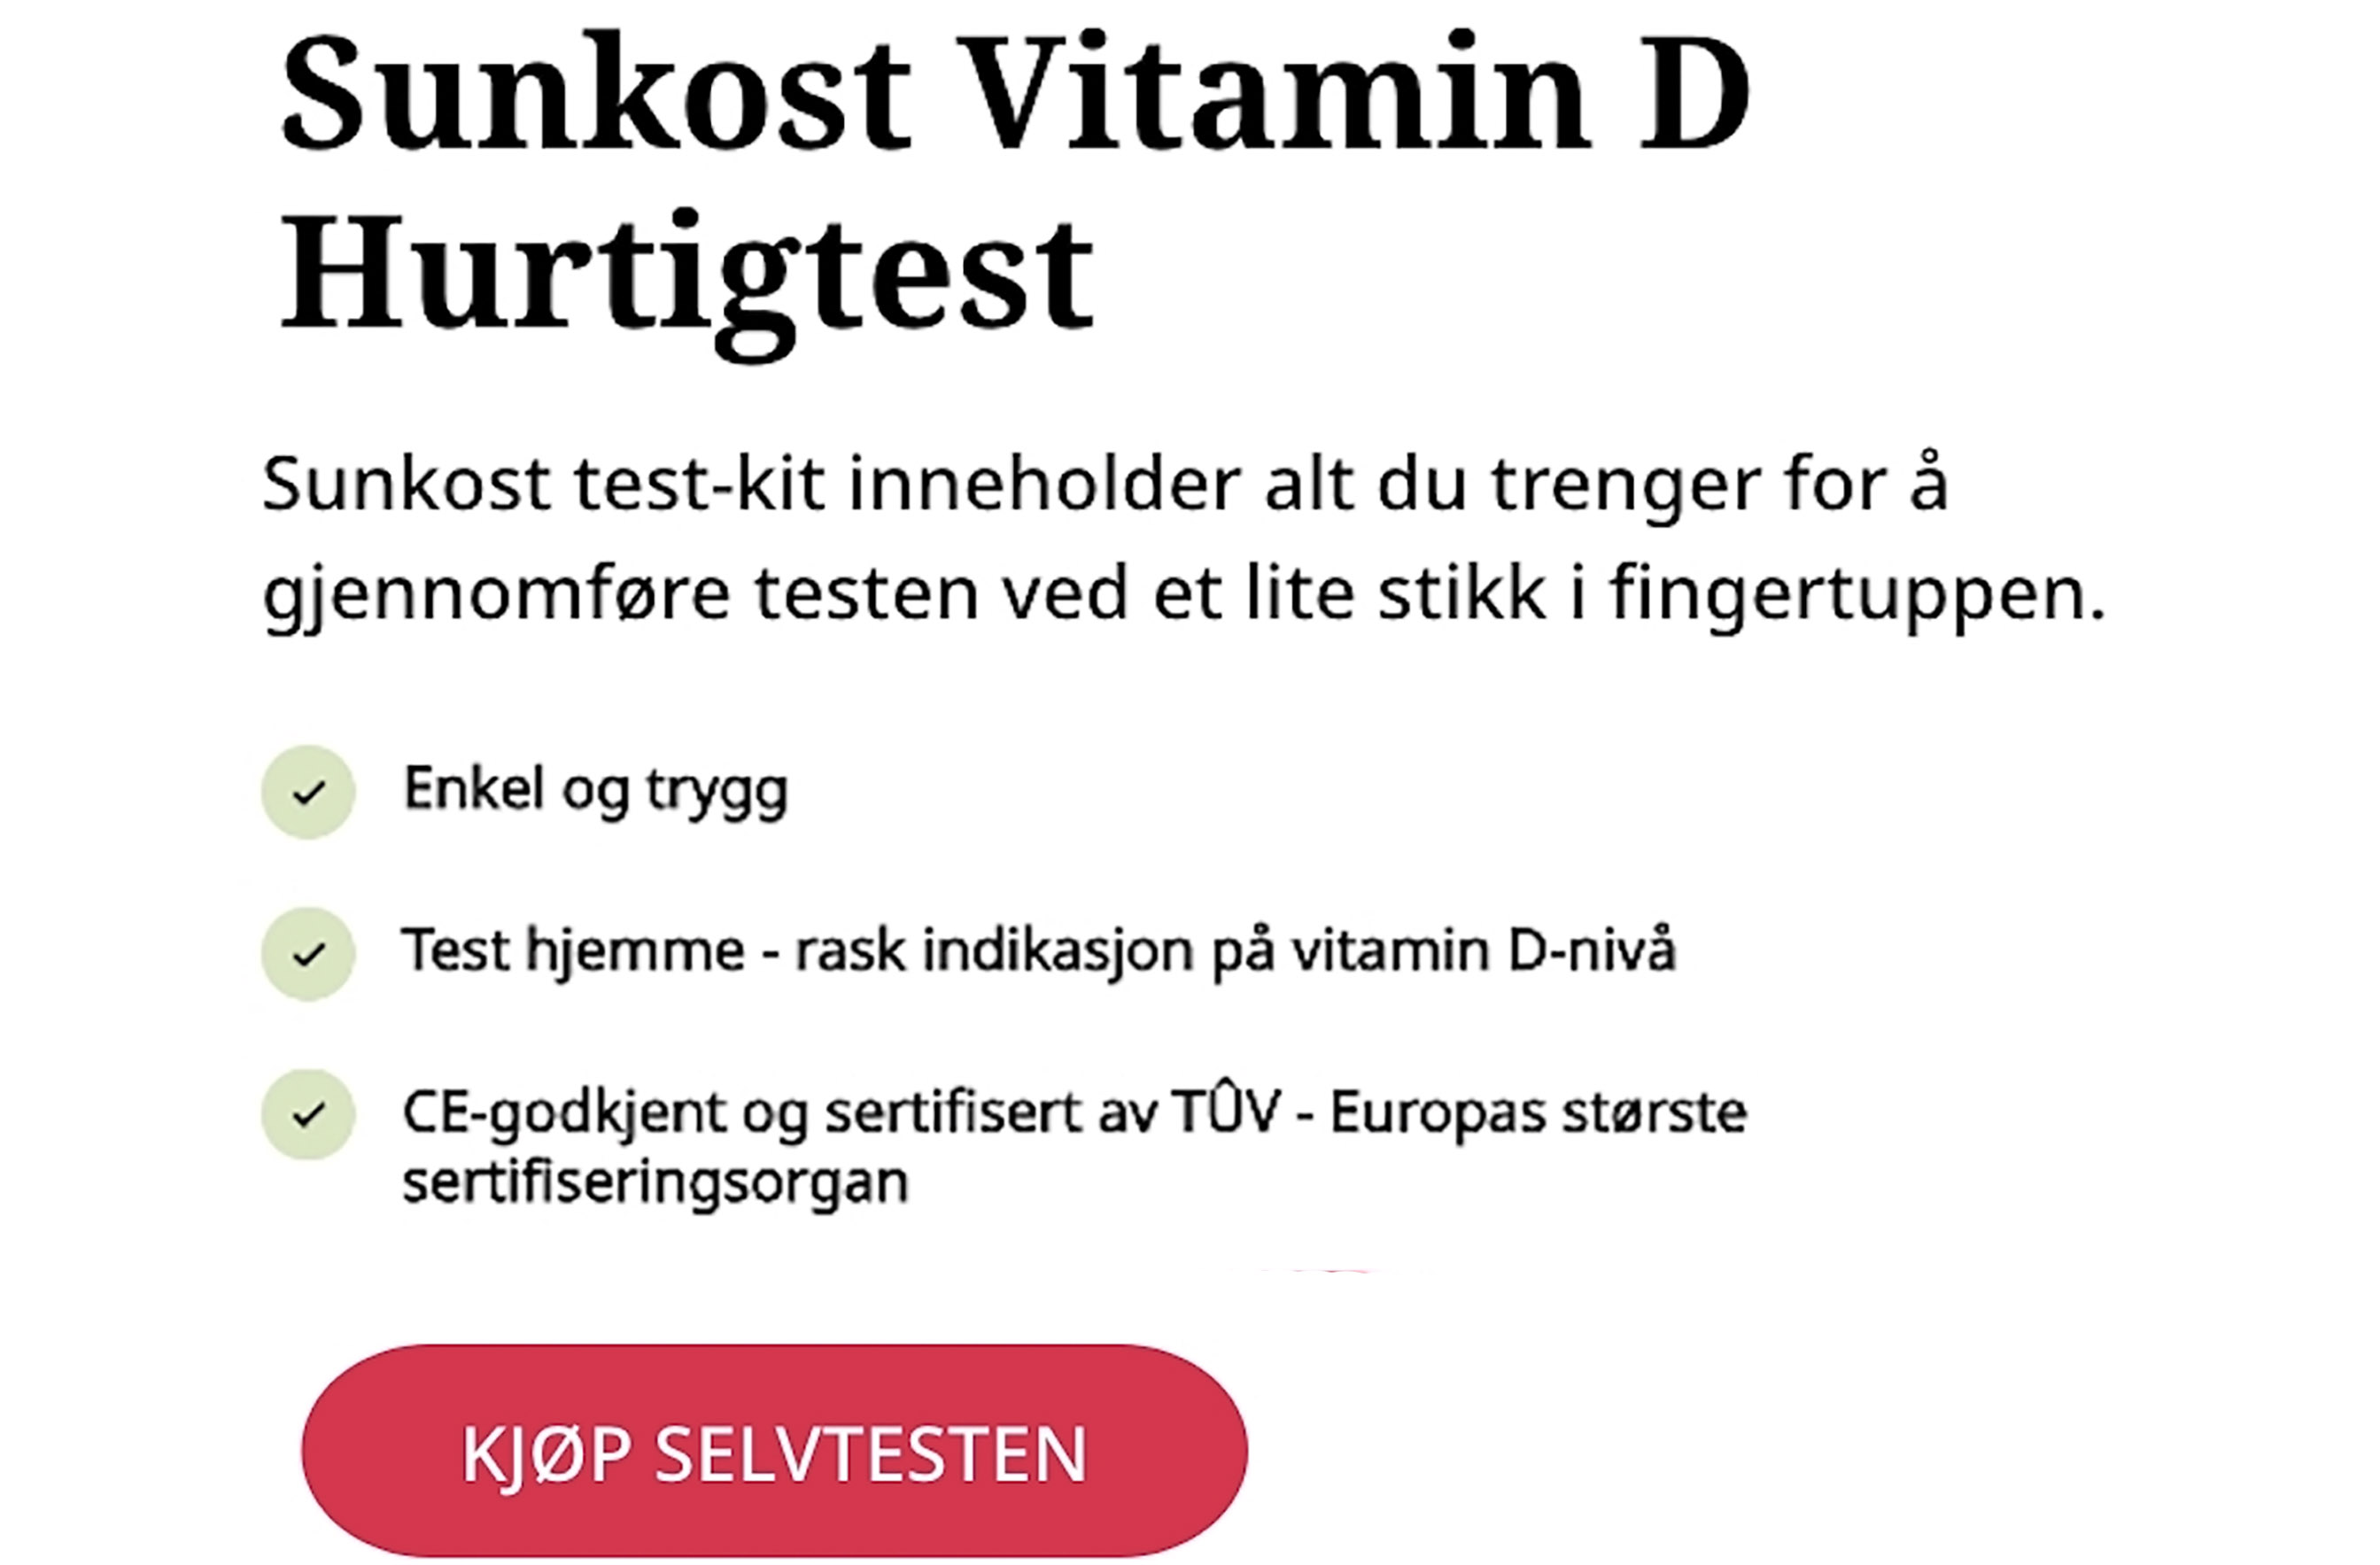 Sunkost D Vitamin informasjon og kjøp-knapp